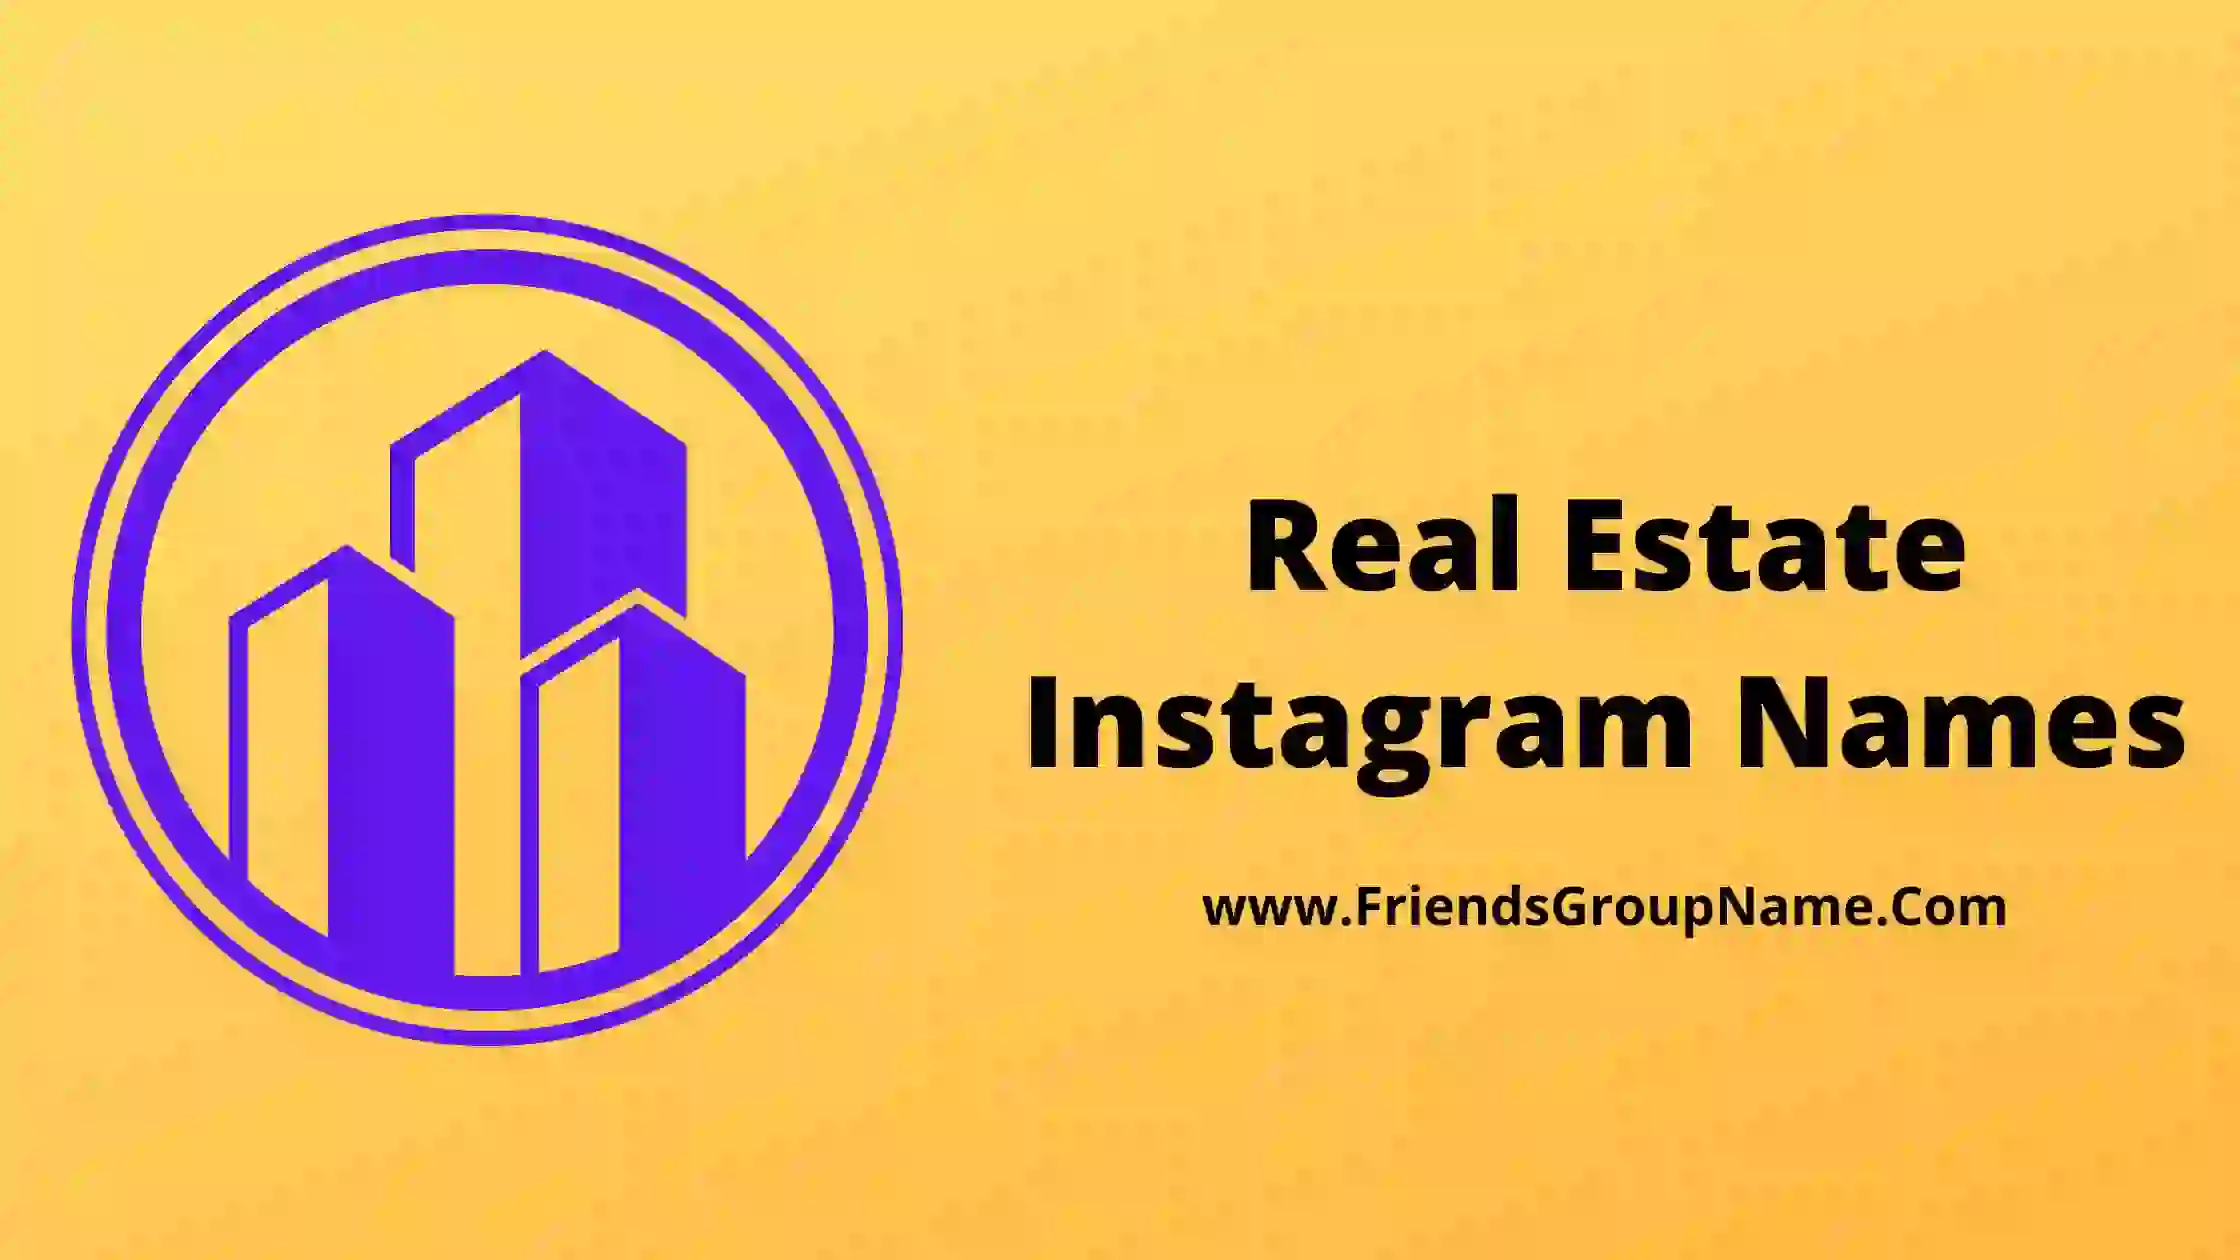 Real Estate Instagram Names